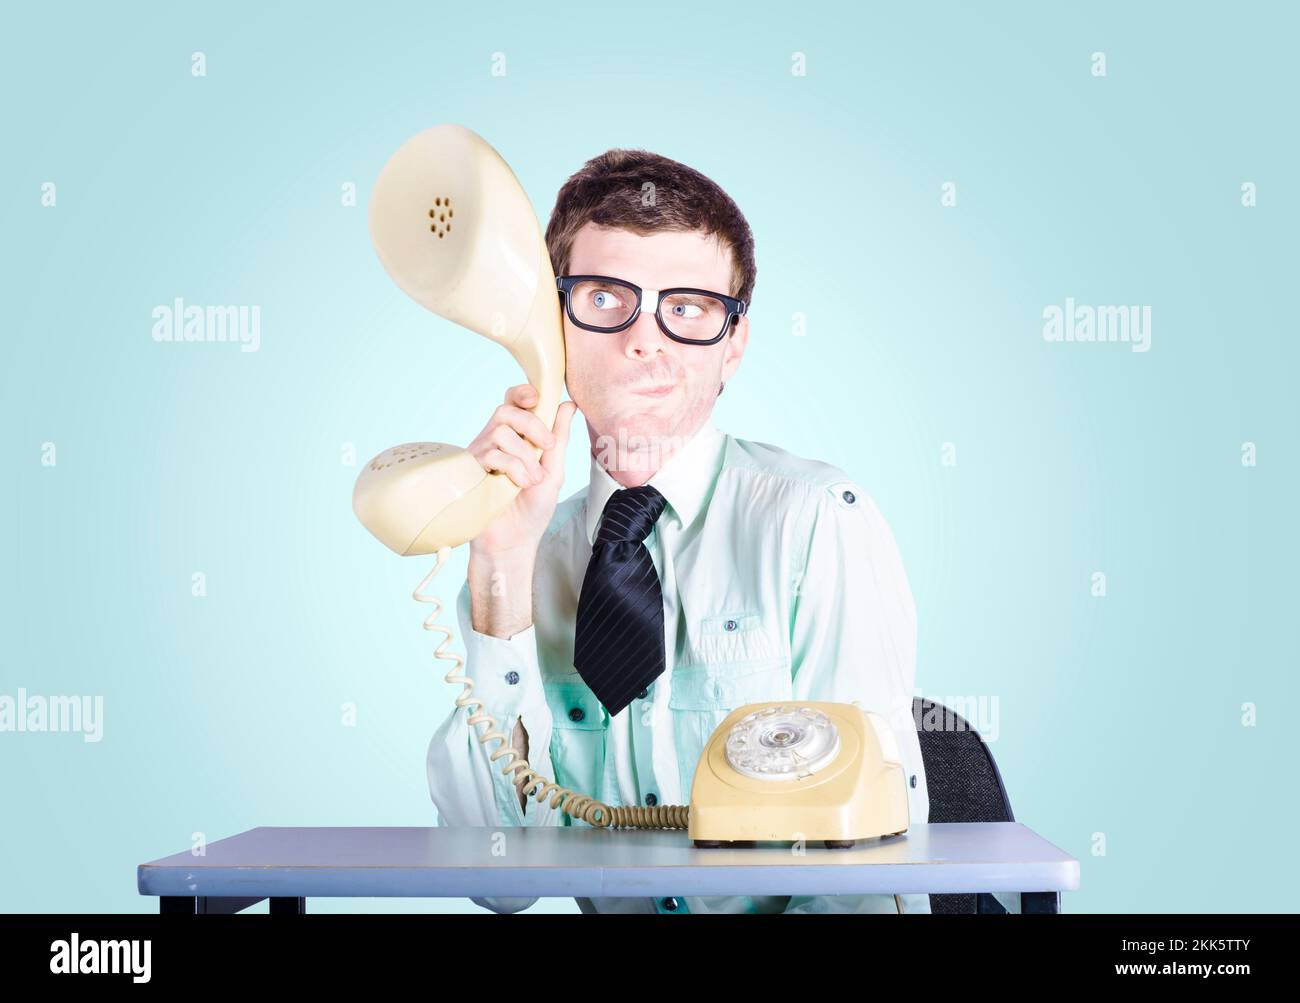 Bild eines Nerd-Geschäftsmannes, der an einem Schreibtisch sitzt und einen vergrößerten Telefonhörer hält, um Informationen über die Konkurrenz abzufangen. Marktforschungskontra Stockfoto